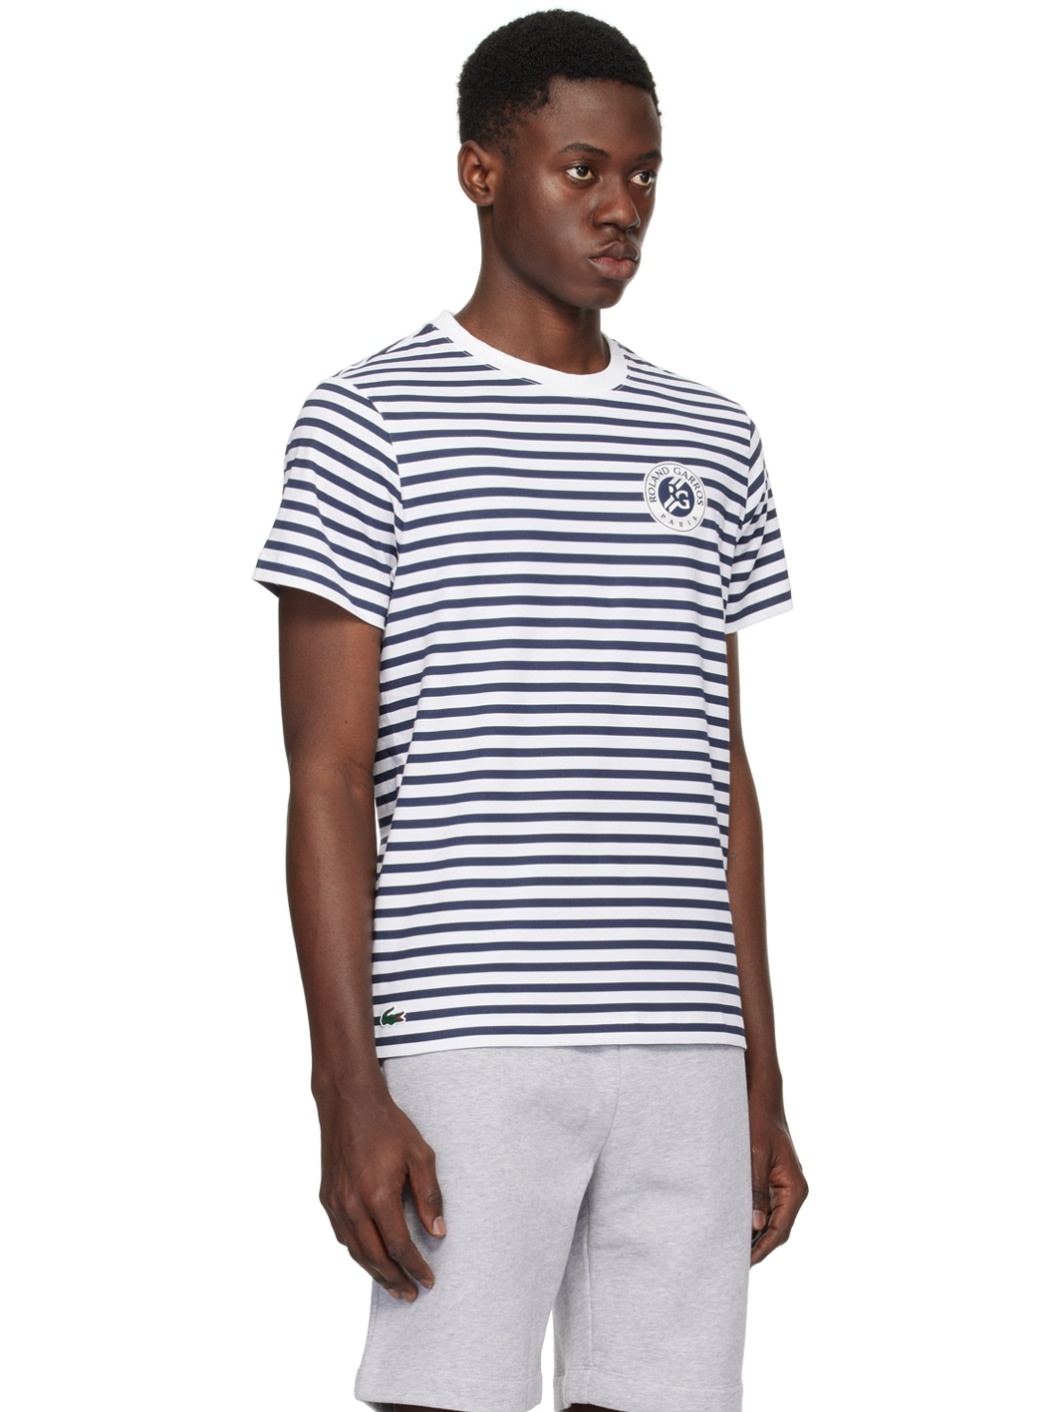 White & Navy Roland Garros Edition T-Shirt - 2